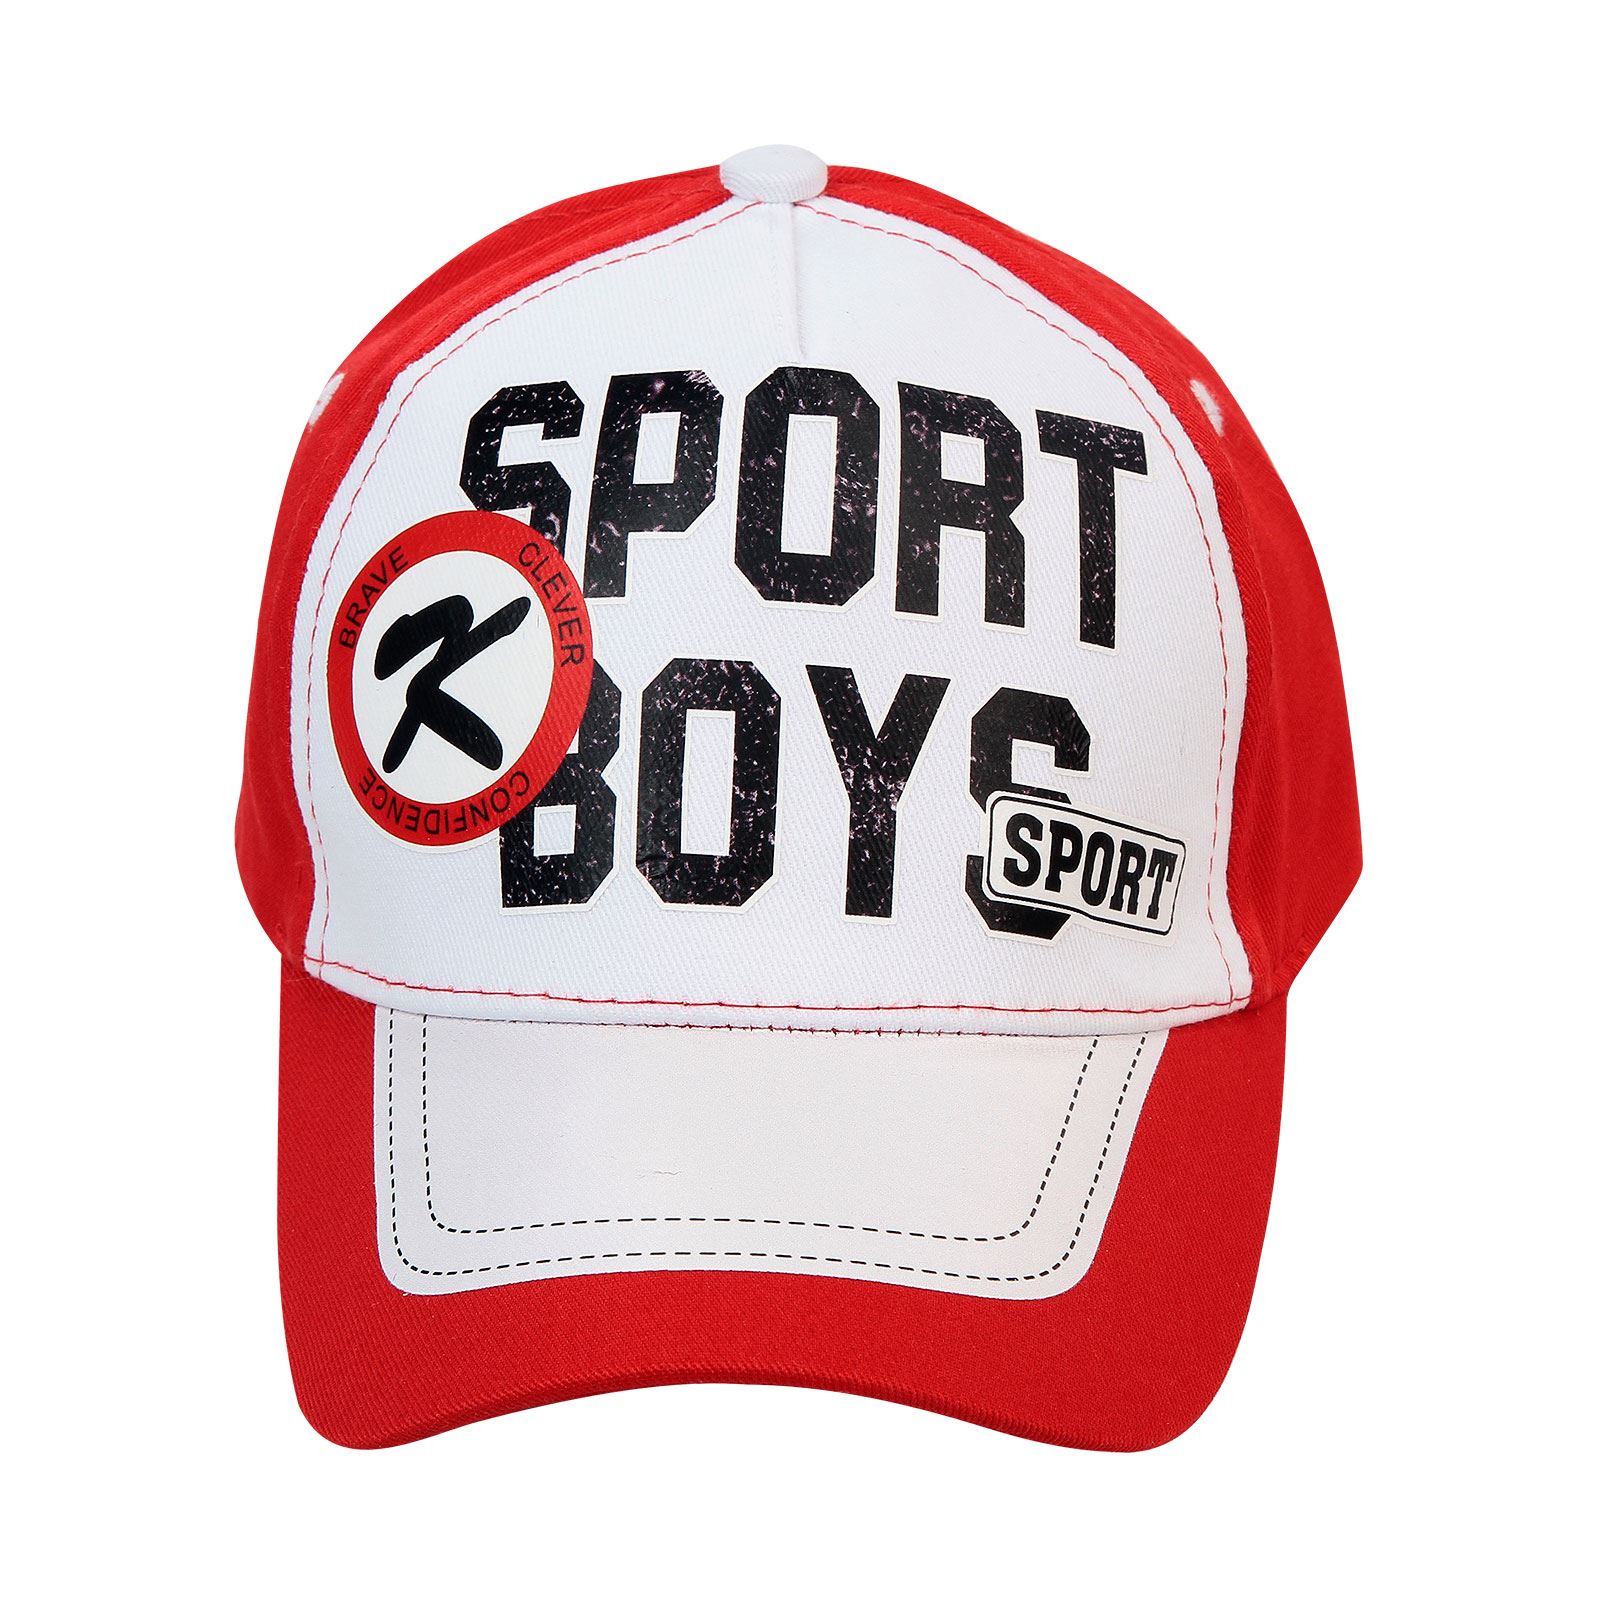 Tidi Erkek Çocuk Kep Şapka 3-7 Yaş Kırmızı